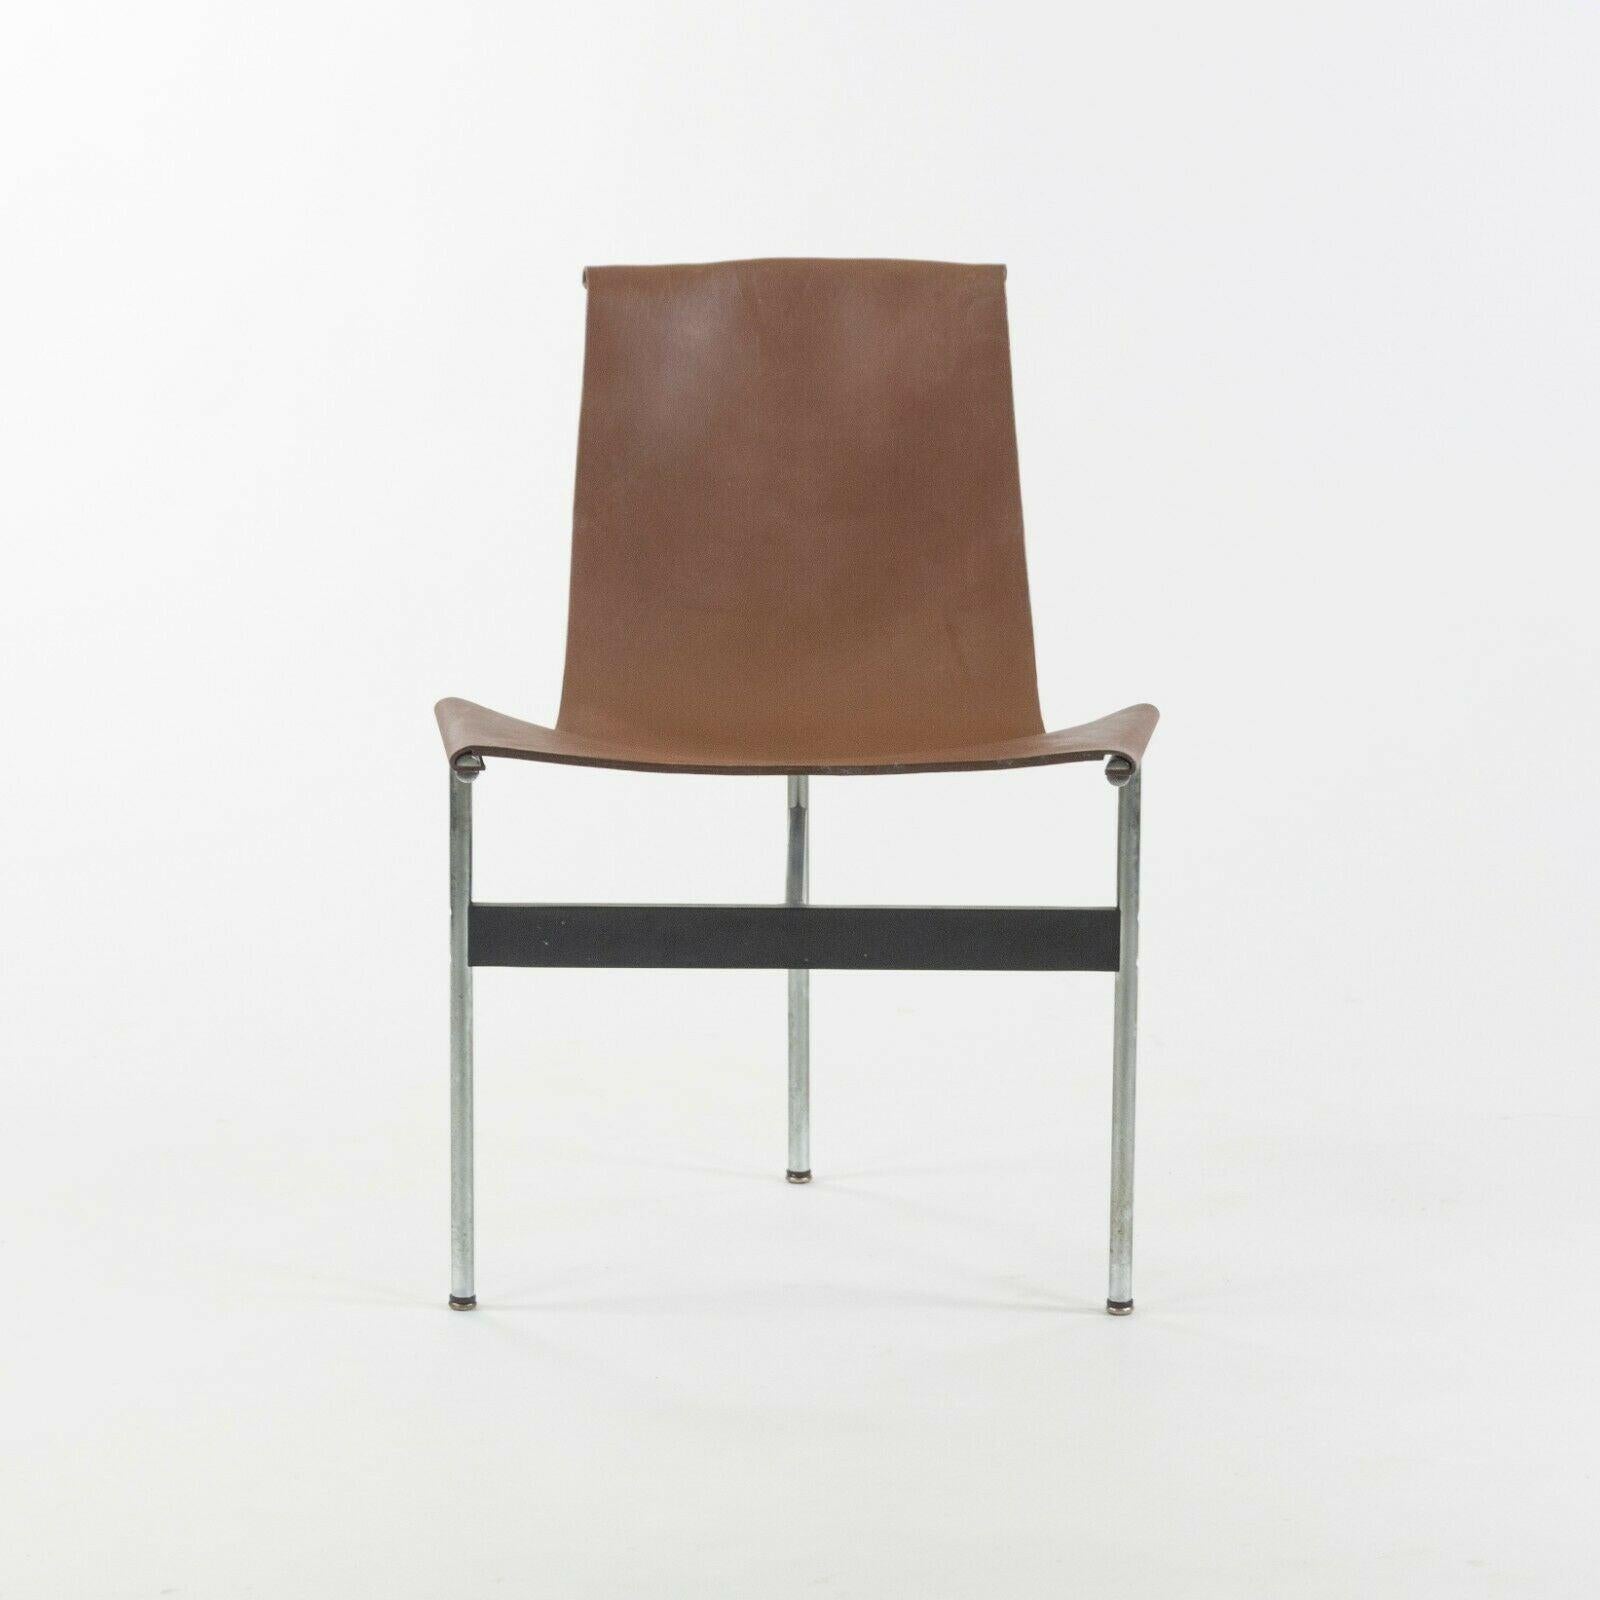 Zum Verkauf steht ein Vintage-Set von vier T-Esszimmerstühlen von Katavolos, Littel und Kelley für Laverne International in braunem Leder. Diese wunderschönen Exemplare haben eine pflanzlich gegerbte Lederhaut, die ein warmes und schönes Braun